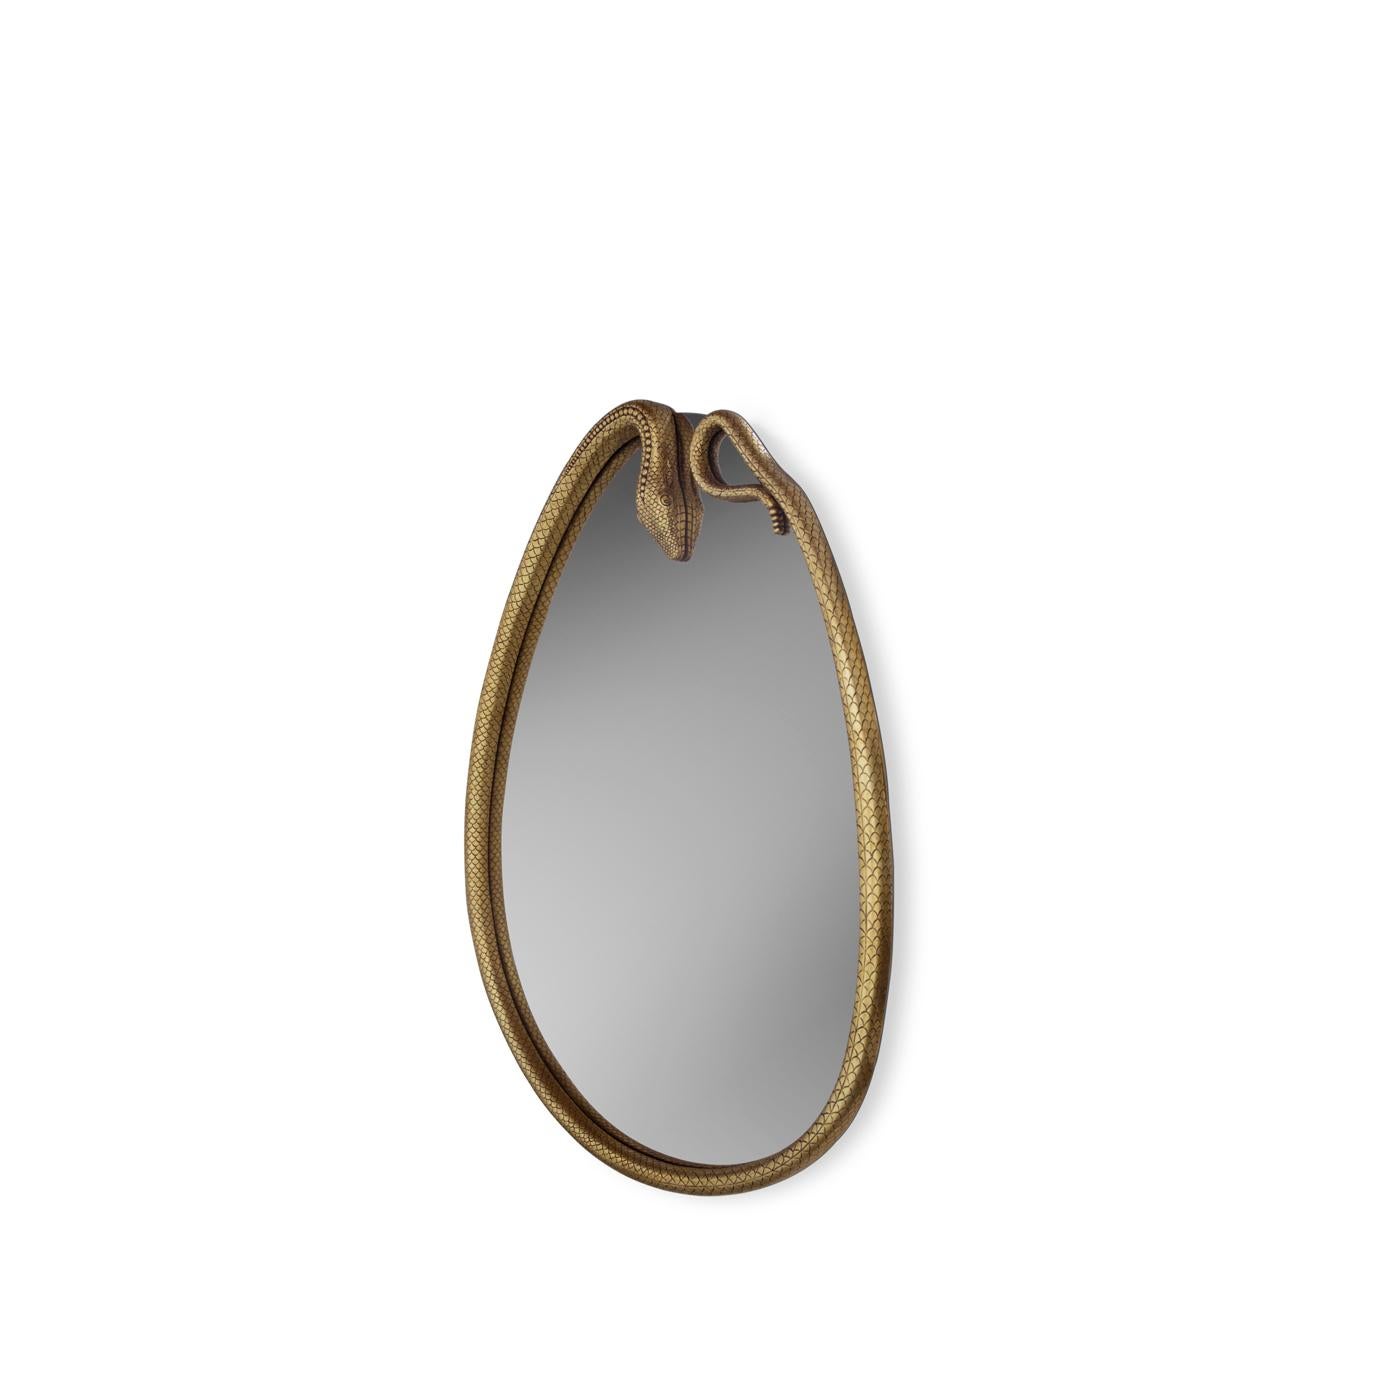 Wenn Sie in den birnenförmigen Spiegel der Serpentine blicken, werden Sie verwandelt. Dieser Spiegel in Form einer gewundenen Schlange aus handgeschnitztem Holz verleiht jeder Einrichtung einen Hauch von Exotik.